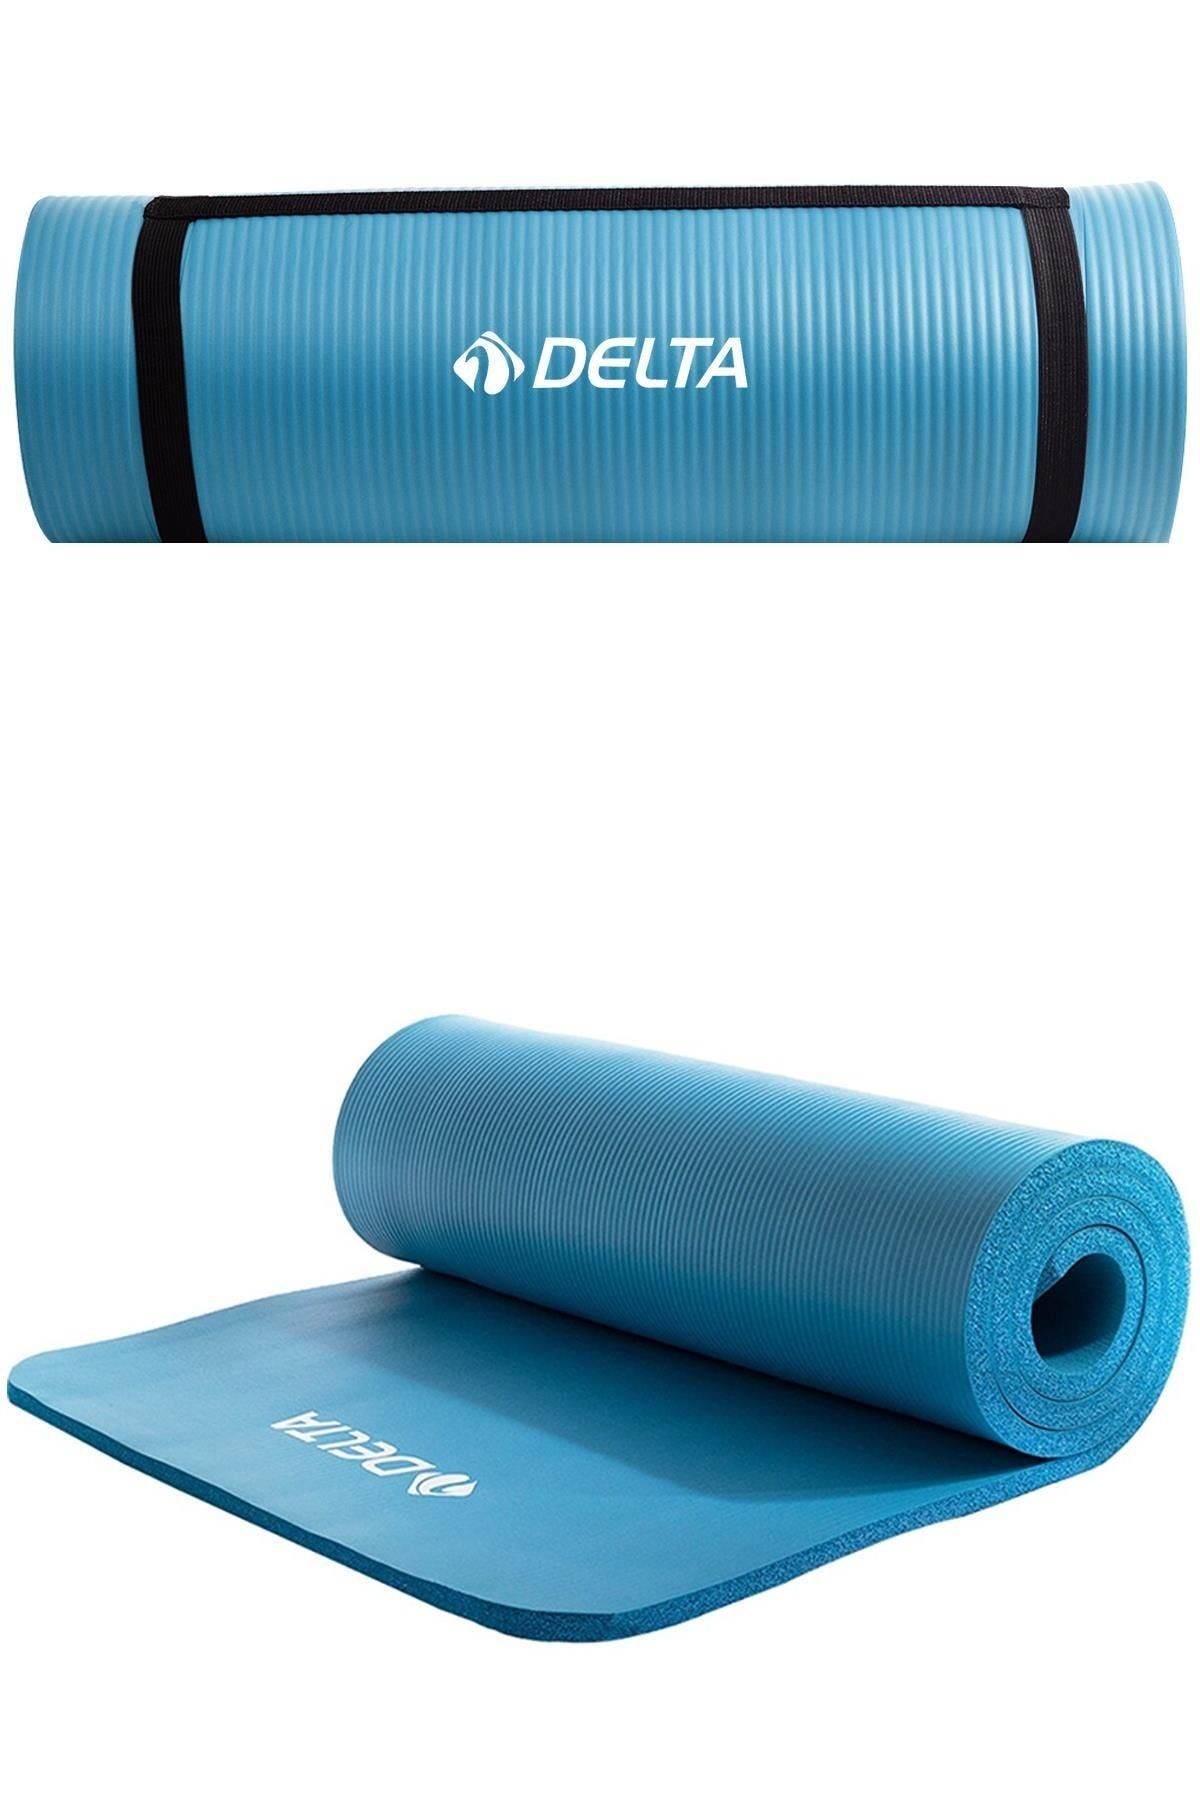 Delta Konfor Zemin 15 mm Taşıma Askılı Pilates Minderi Yoga Matı